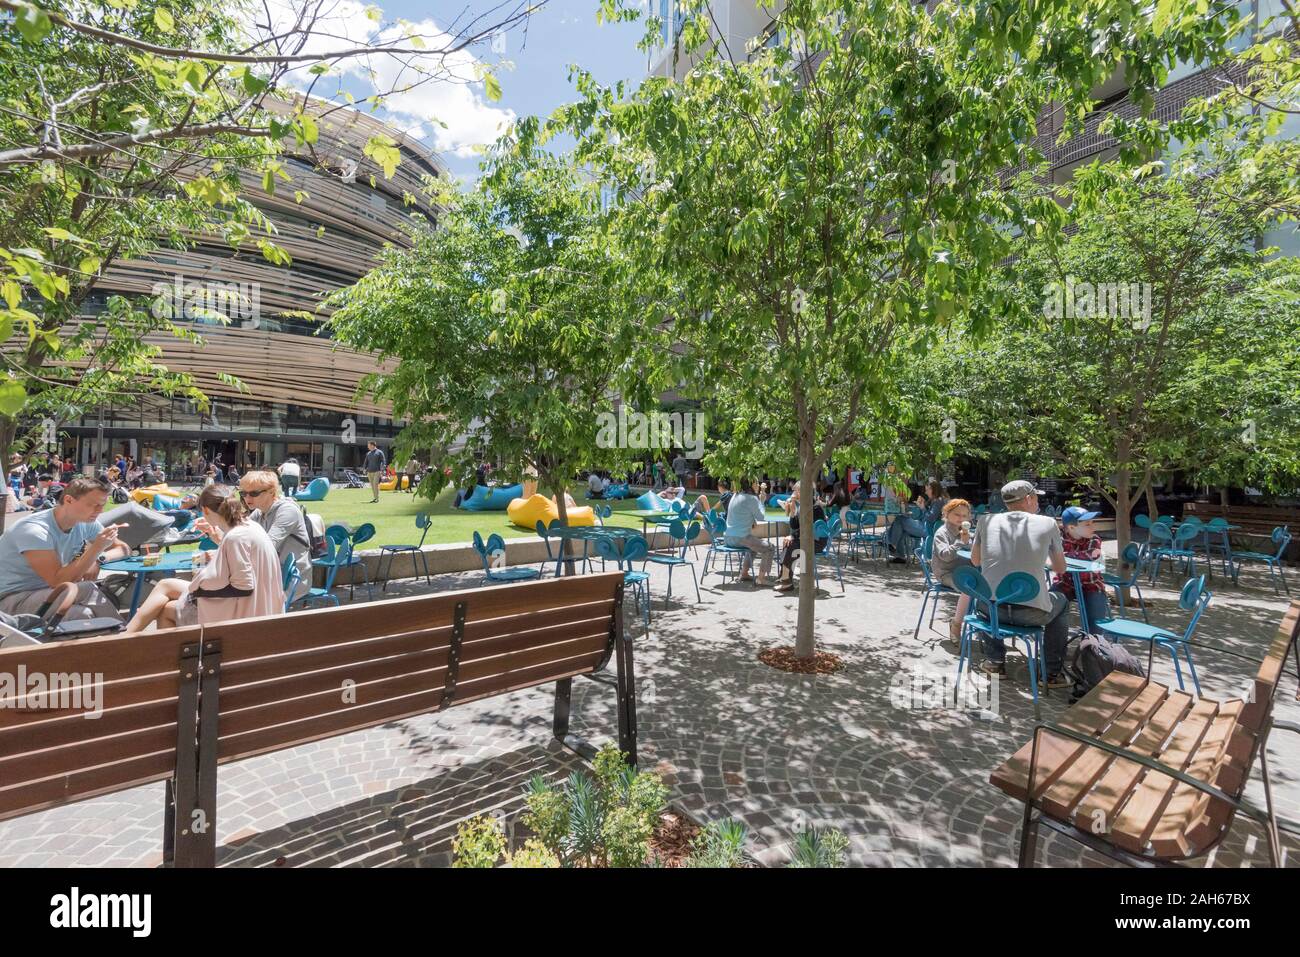 Les gens pique-nique dans le parc de l'échange de nouvelles capacités dans Darling Square, Sydney, Australie, conçu par l'entreprise d'architecture japonais Kengo Kuma Banque D'Images